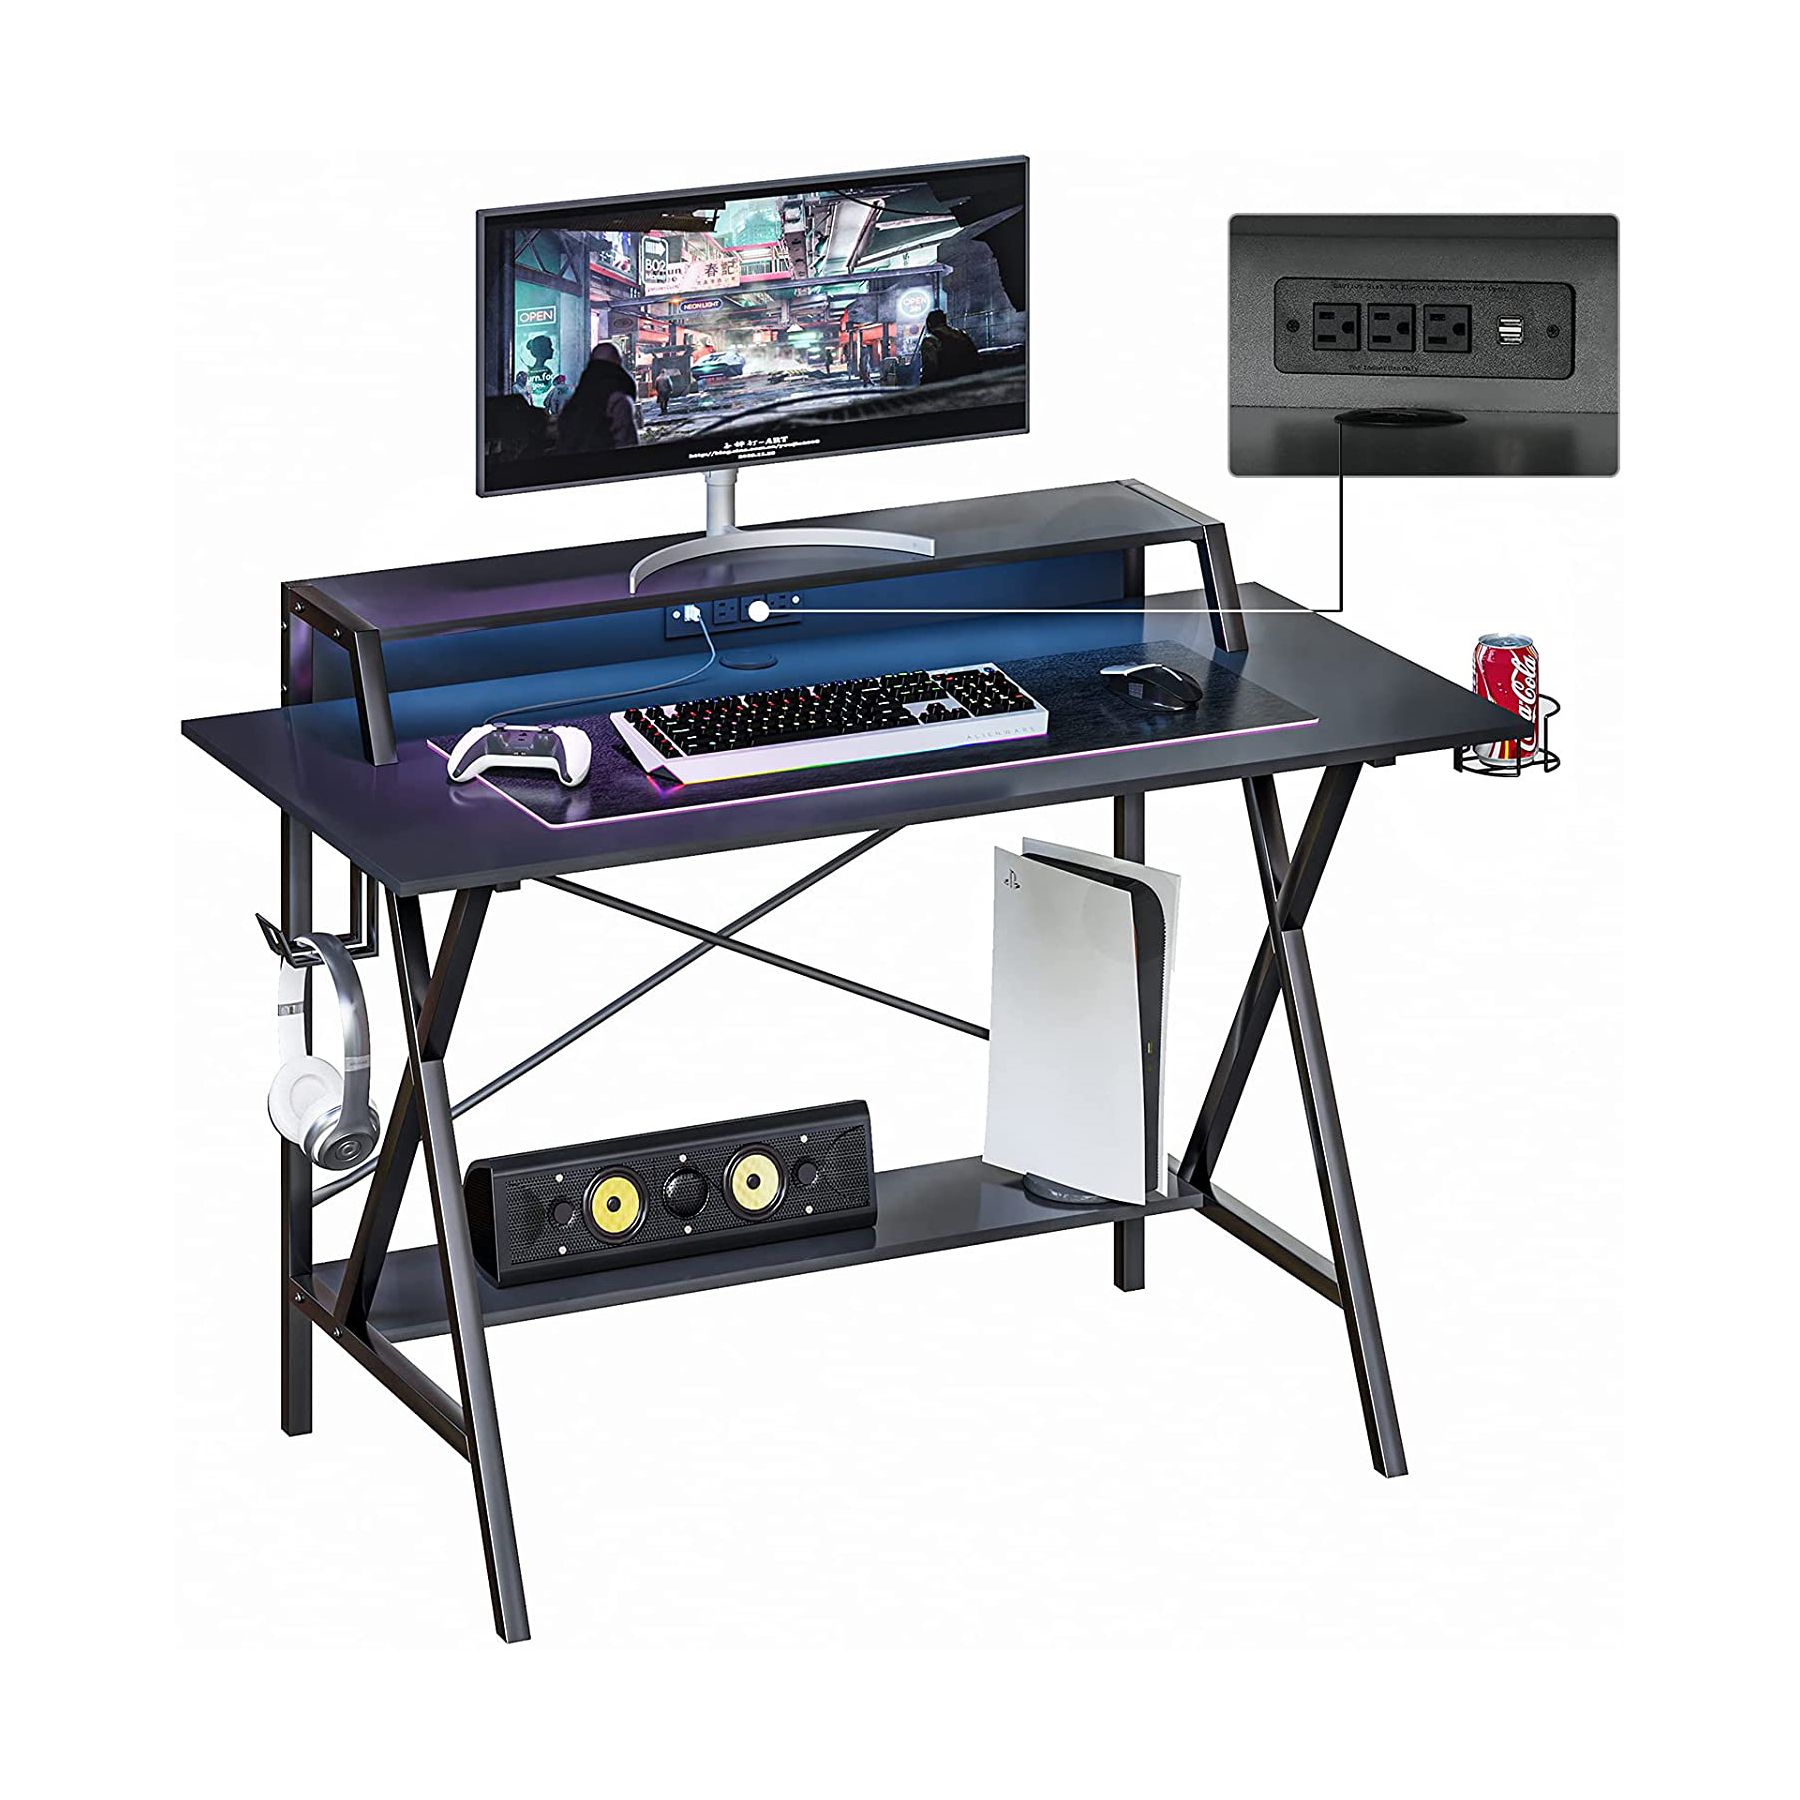 SEDETA 47-inch Gaming Desk 01